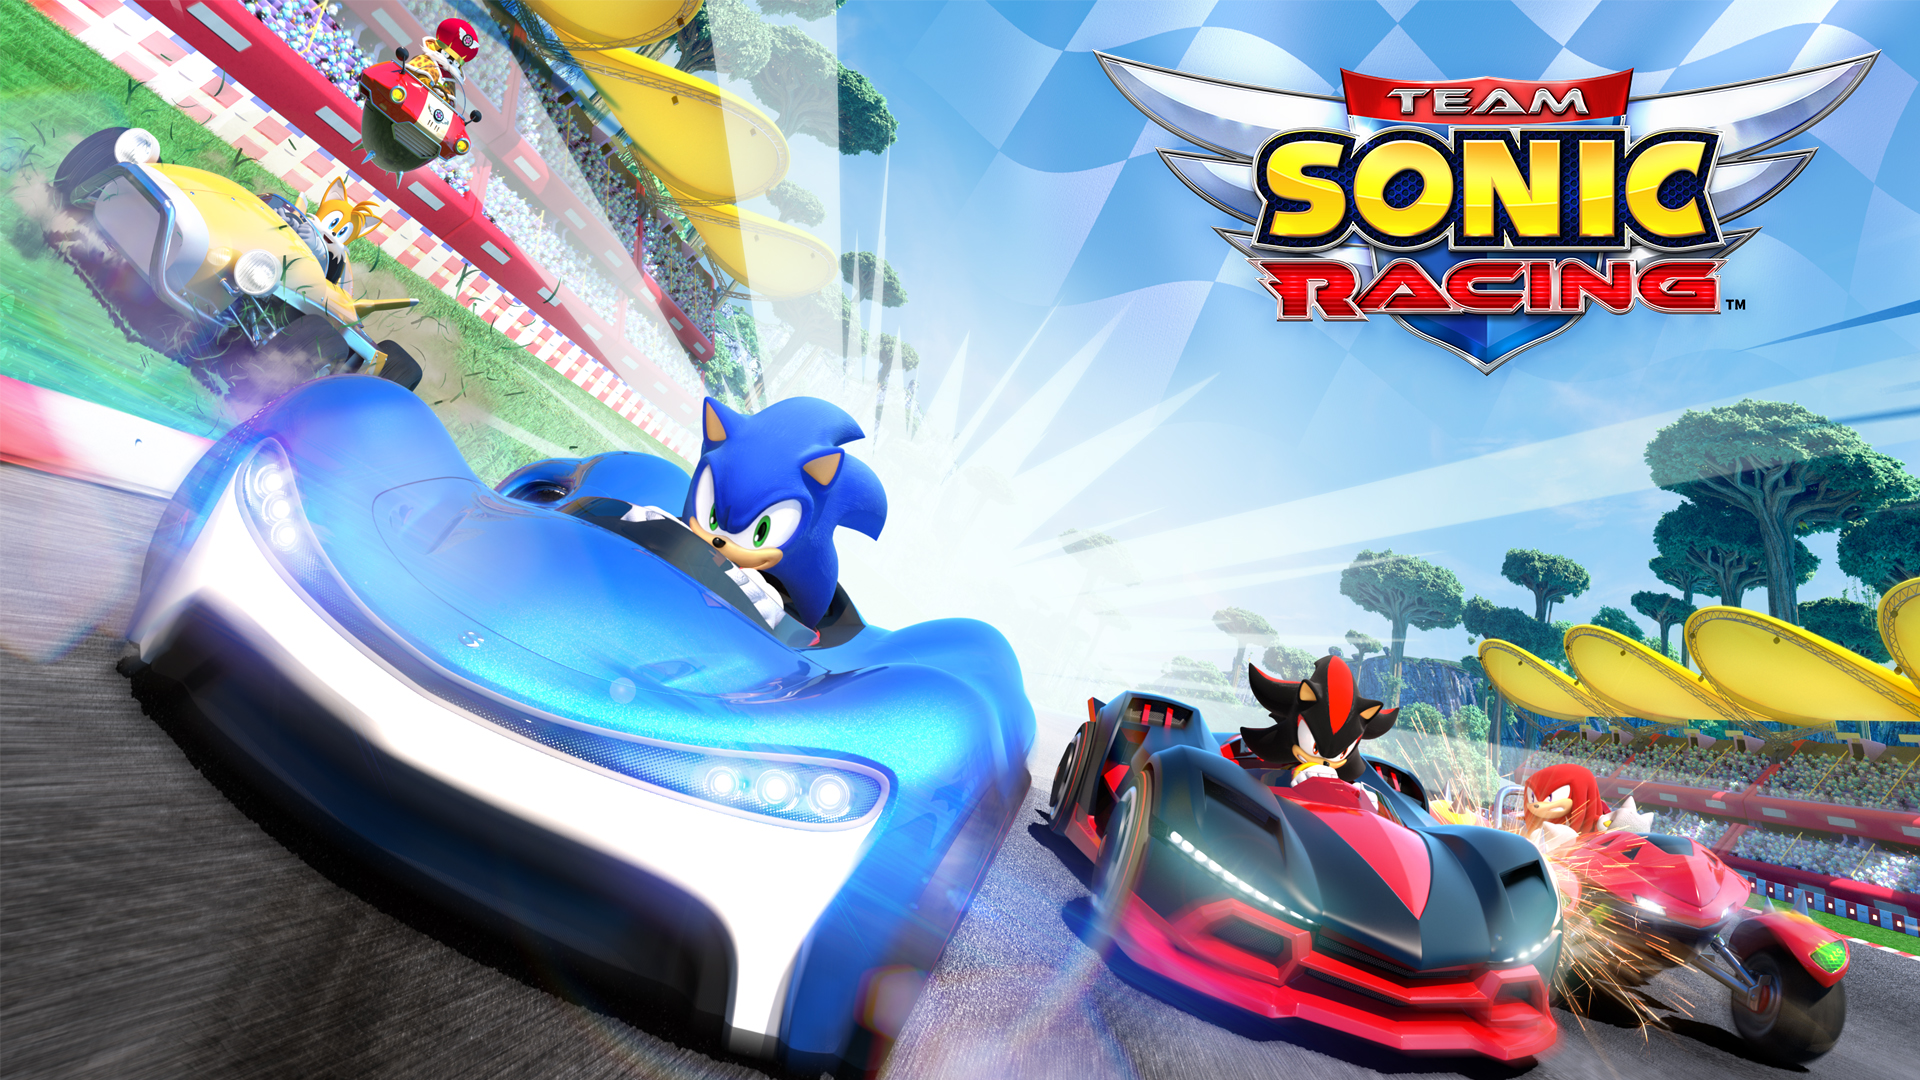 Sonic Racing 索尼克赛车 2.1.0 破解版